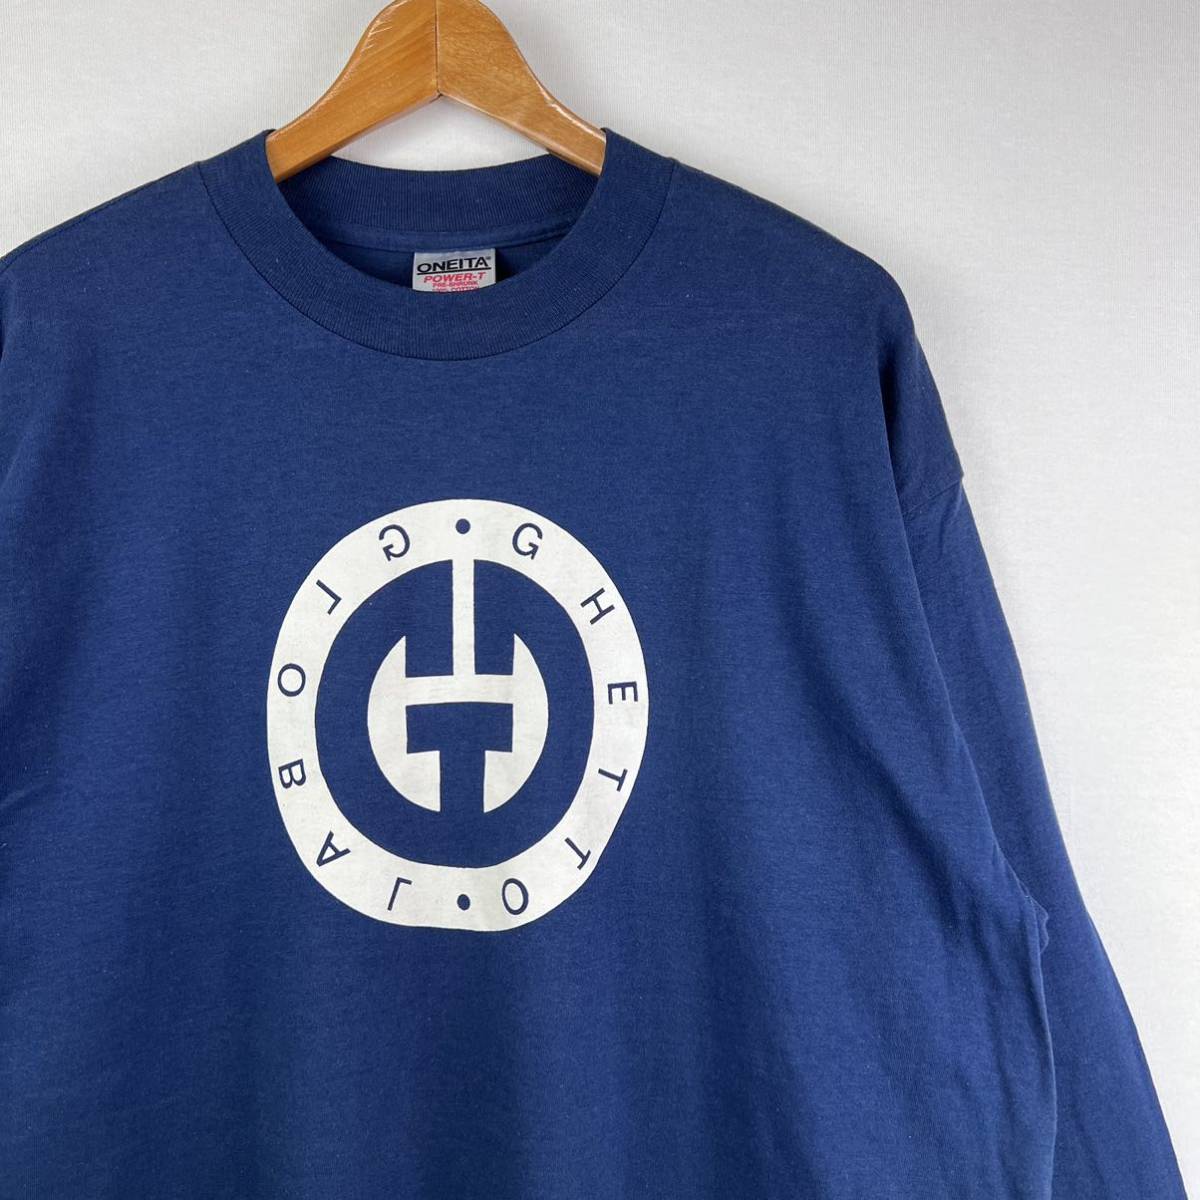 ビンテージ 90s【Global Ghetto】長袖 Tシャツ XL USA製 古着 ロンT グローバルゲットー アメカジ オールドスケート OLD GHOST 美品